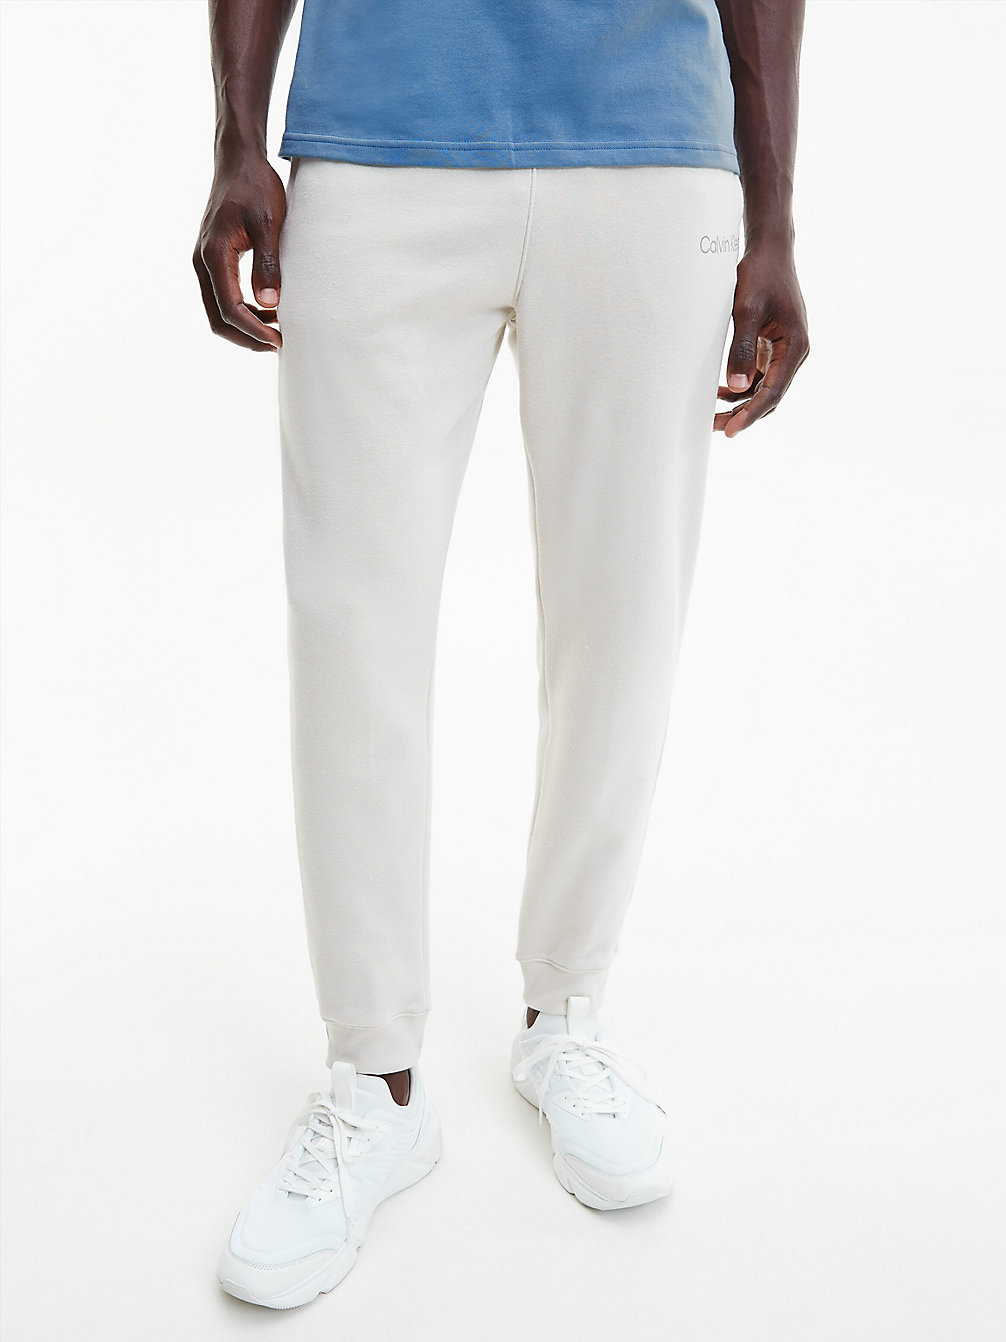 OATMEAL Pantalon De Jogging En Tissu Éponge De Coton Avec Logo undefined hommes Calvin Klein